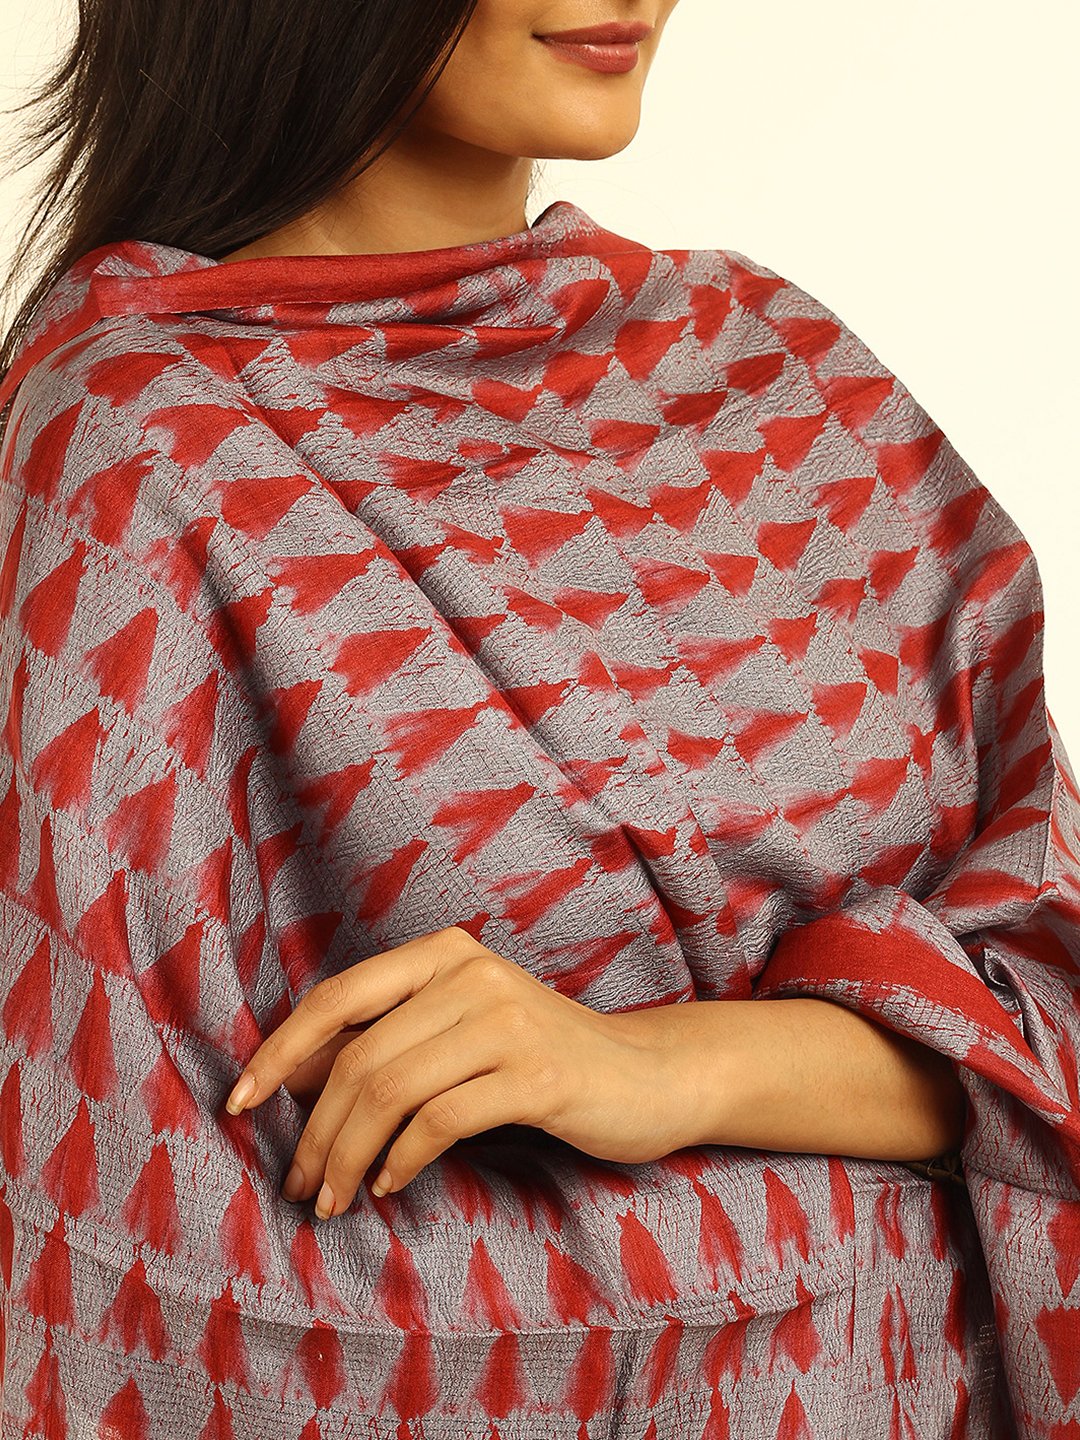 Just in Handloom Grey Red Shibori Silk Dupatta - Arteastri